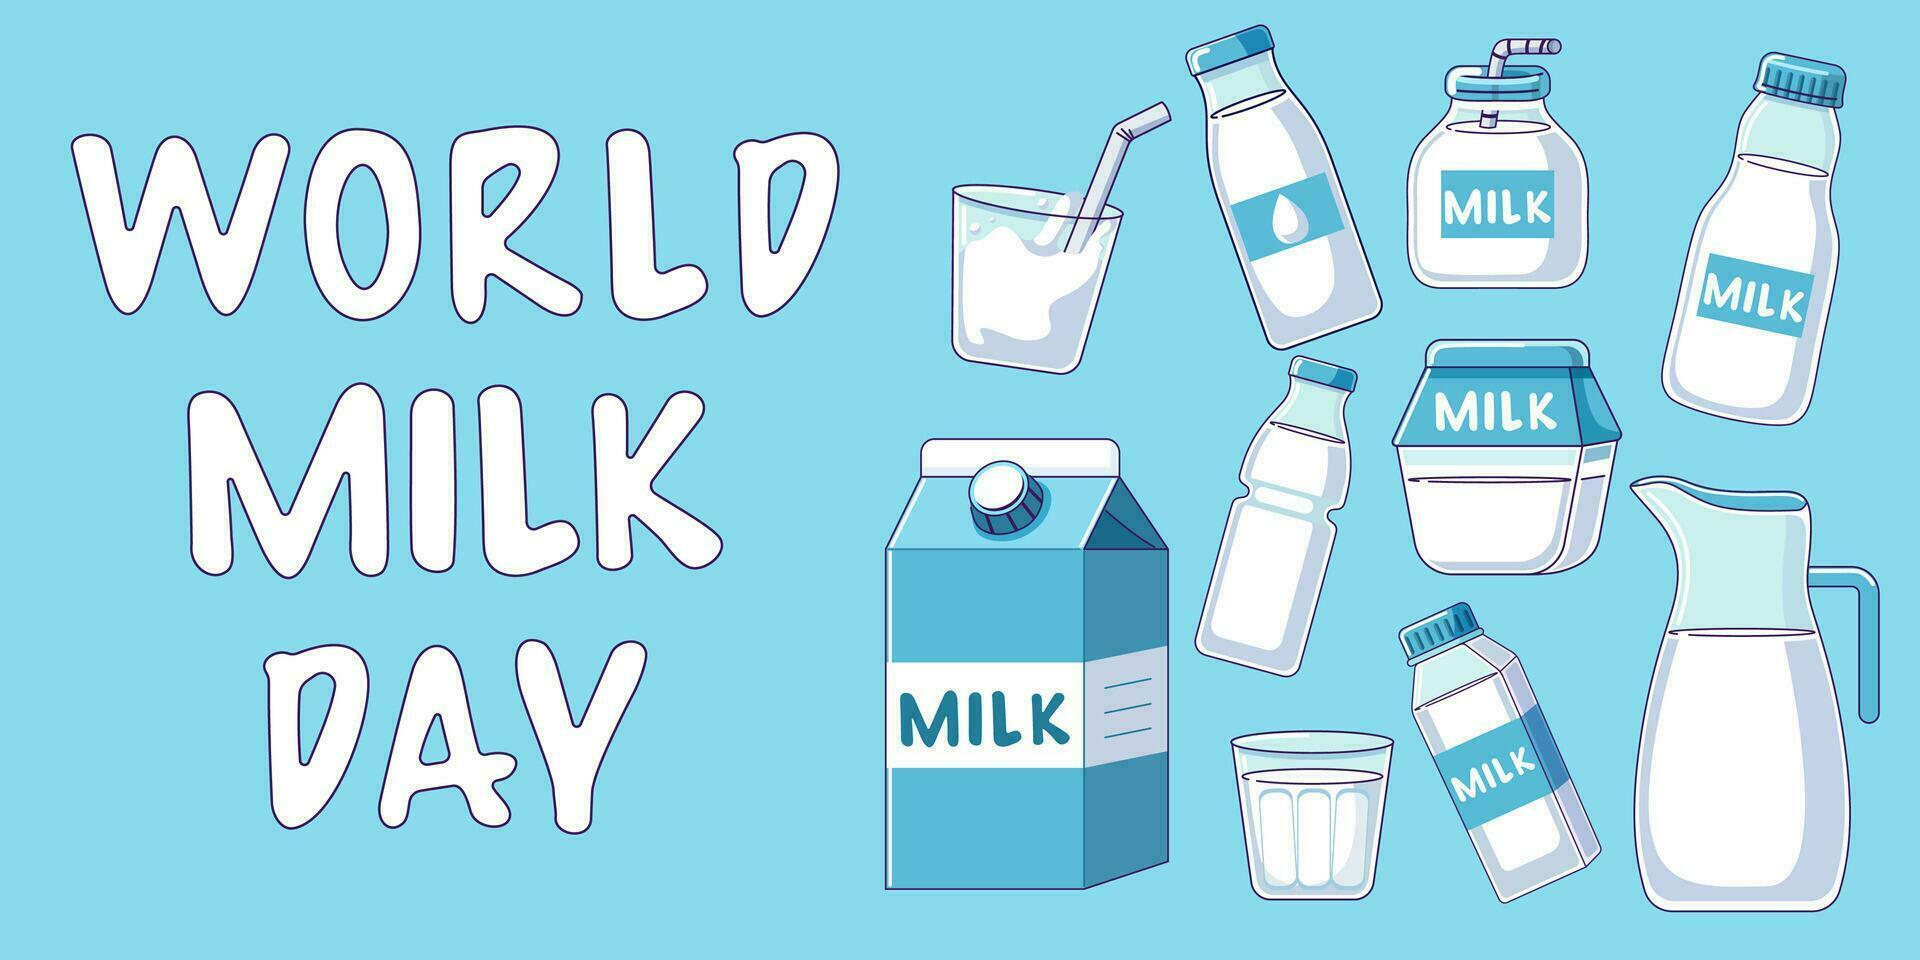 giornata mondiale del latte vettore